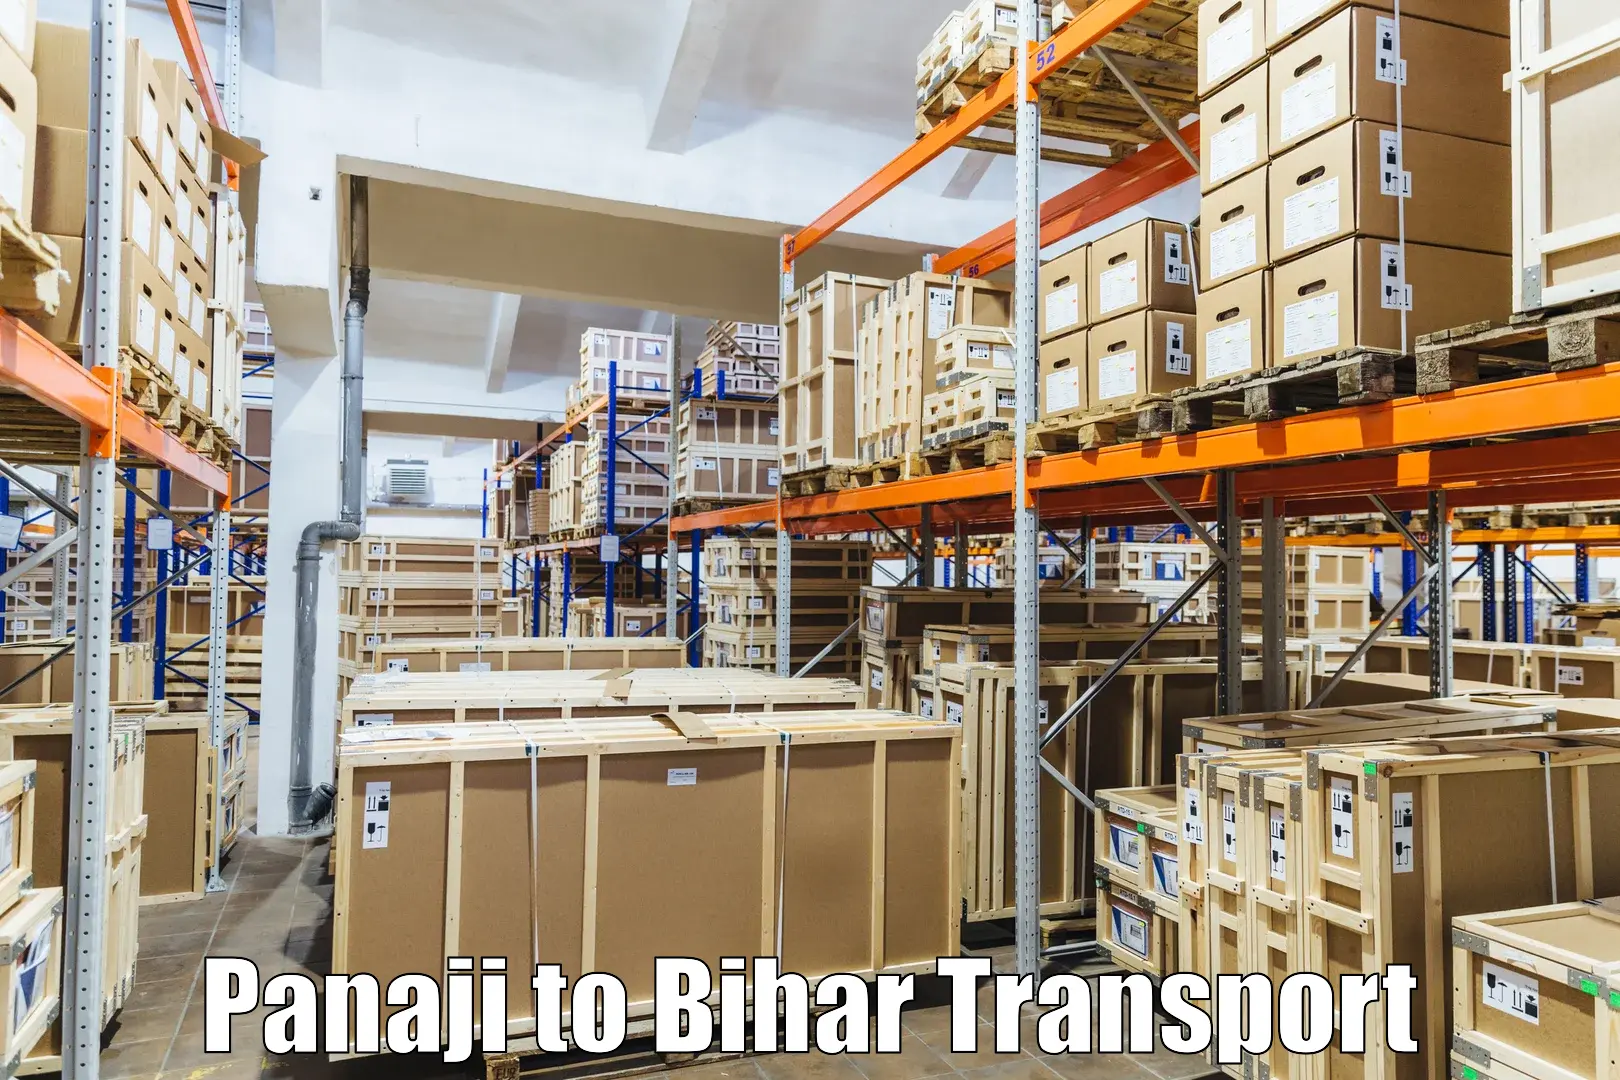 Online transport service Panaji to Saraiya